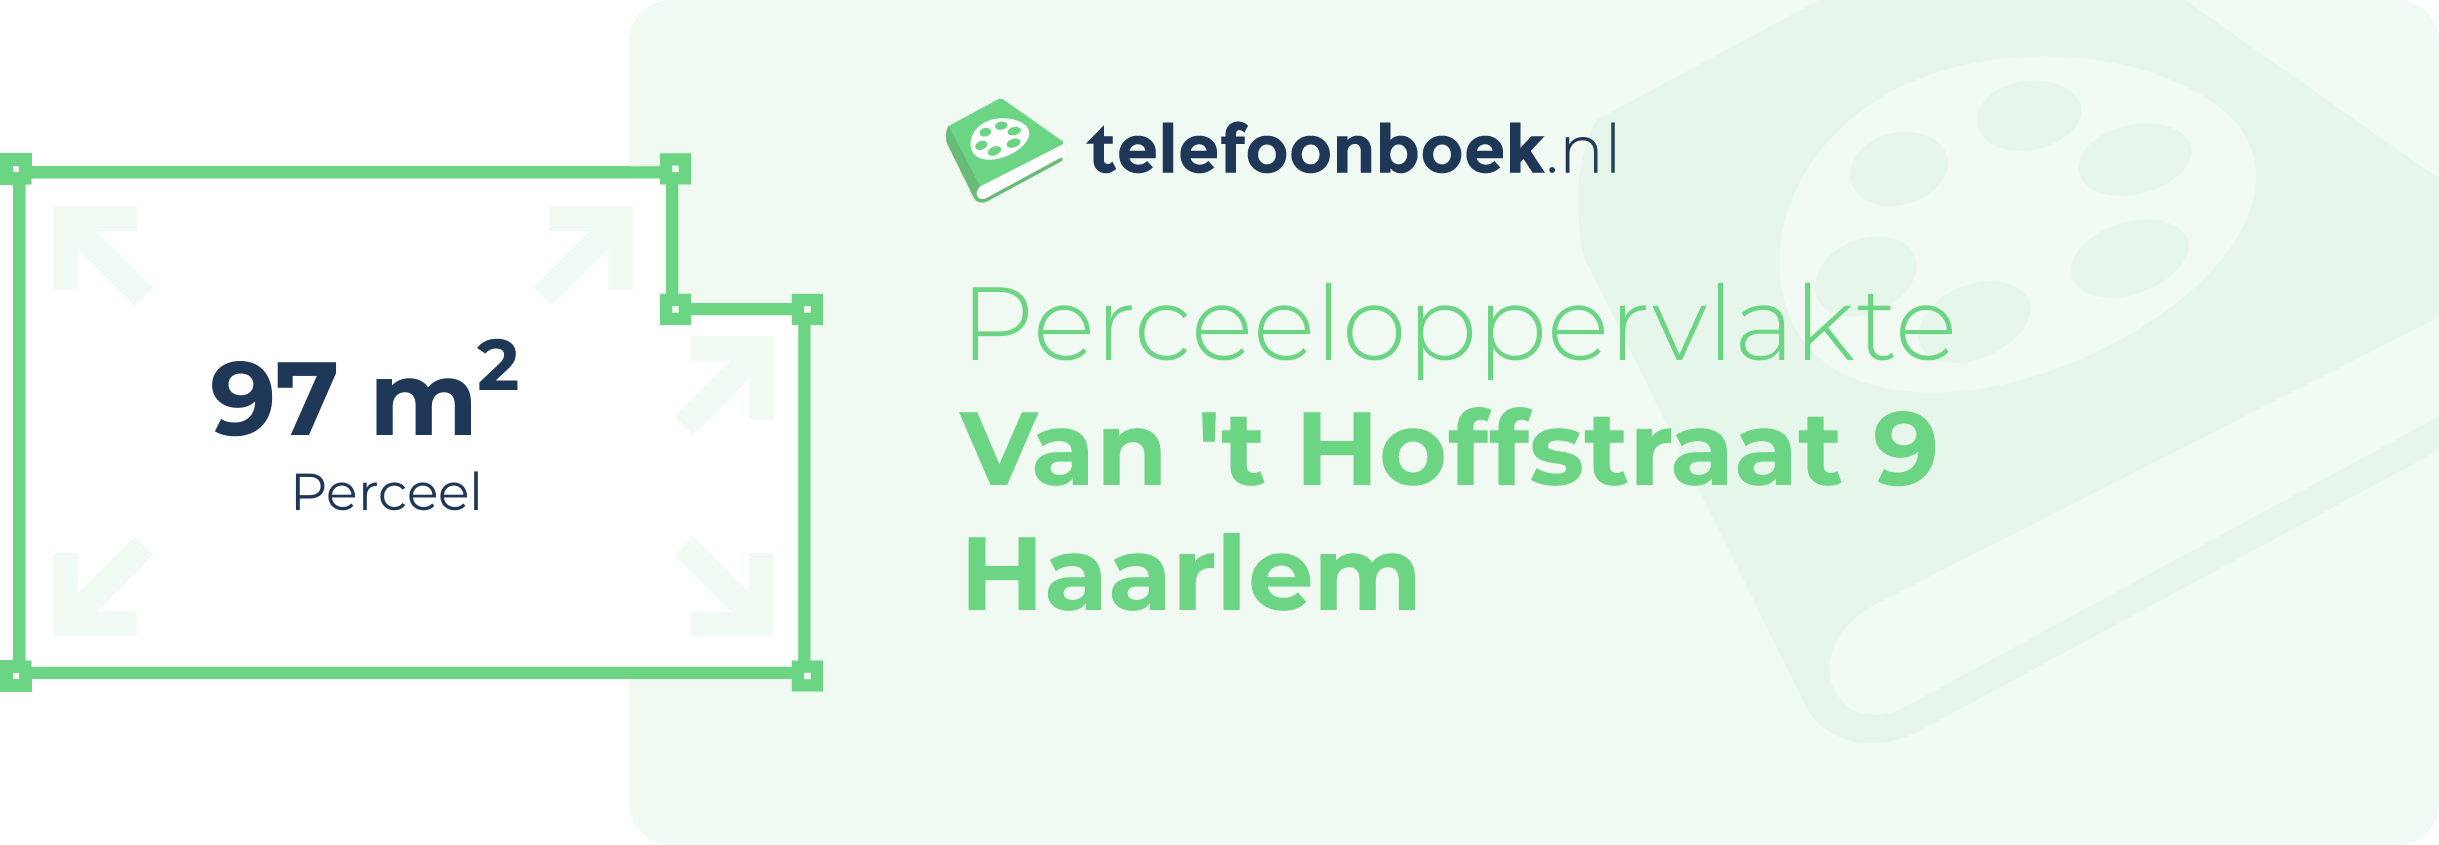 Perceeloppervlakte Van 't Hoffstraat 9 Haarlem